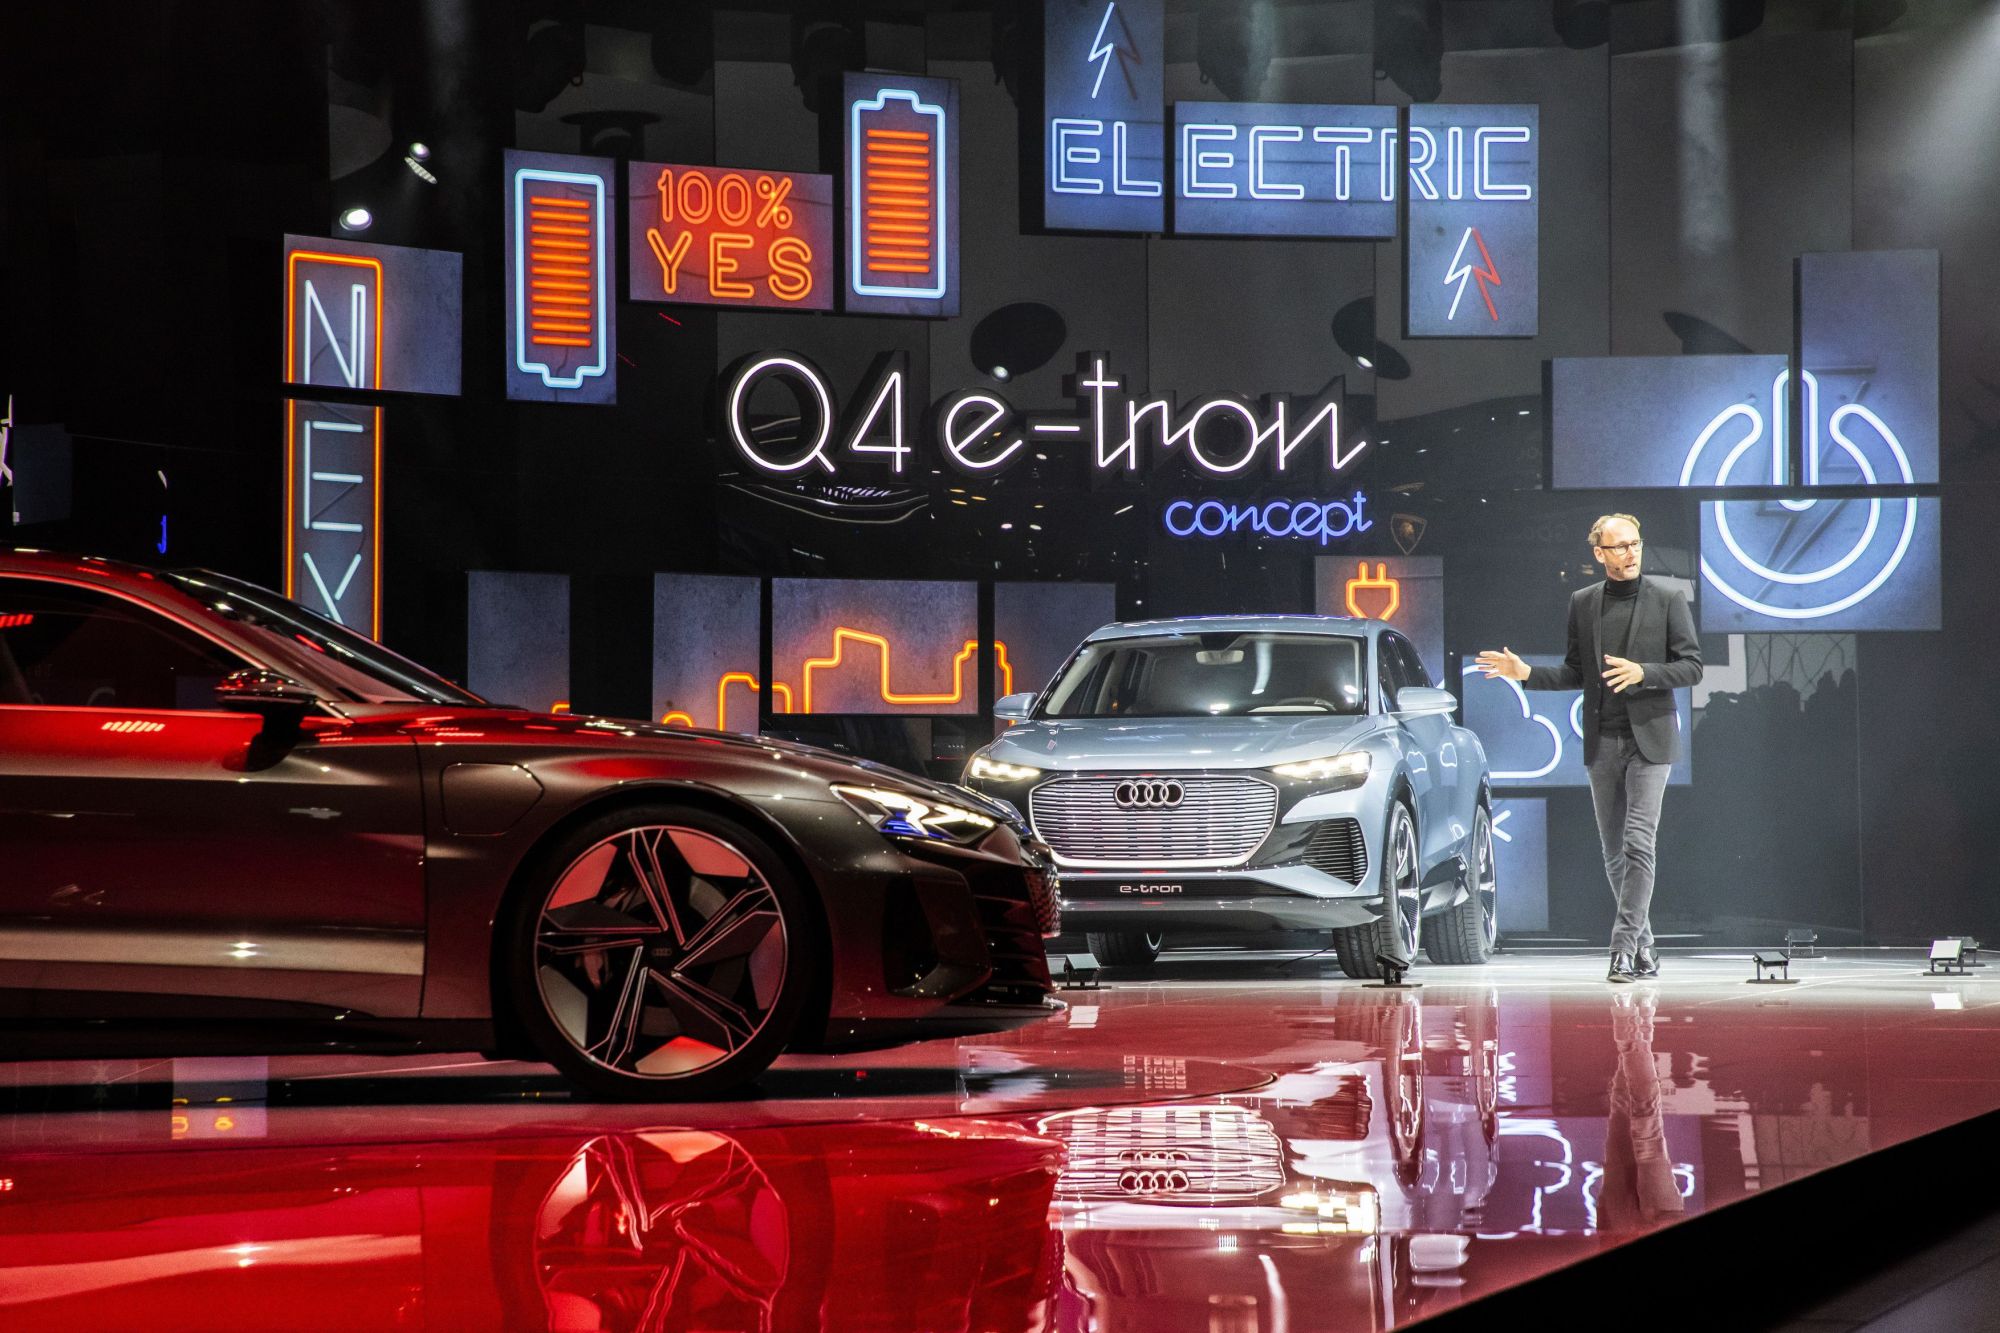 来看看 Audi 在 2019 日内瓦车展的精彩回顾吧！ 